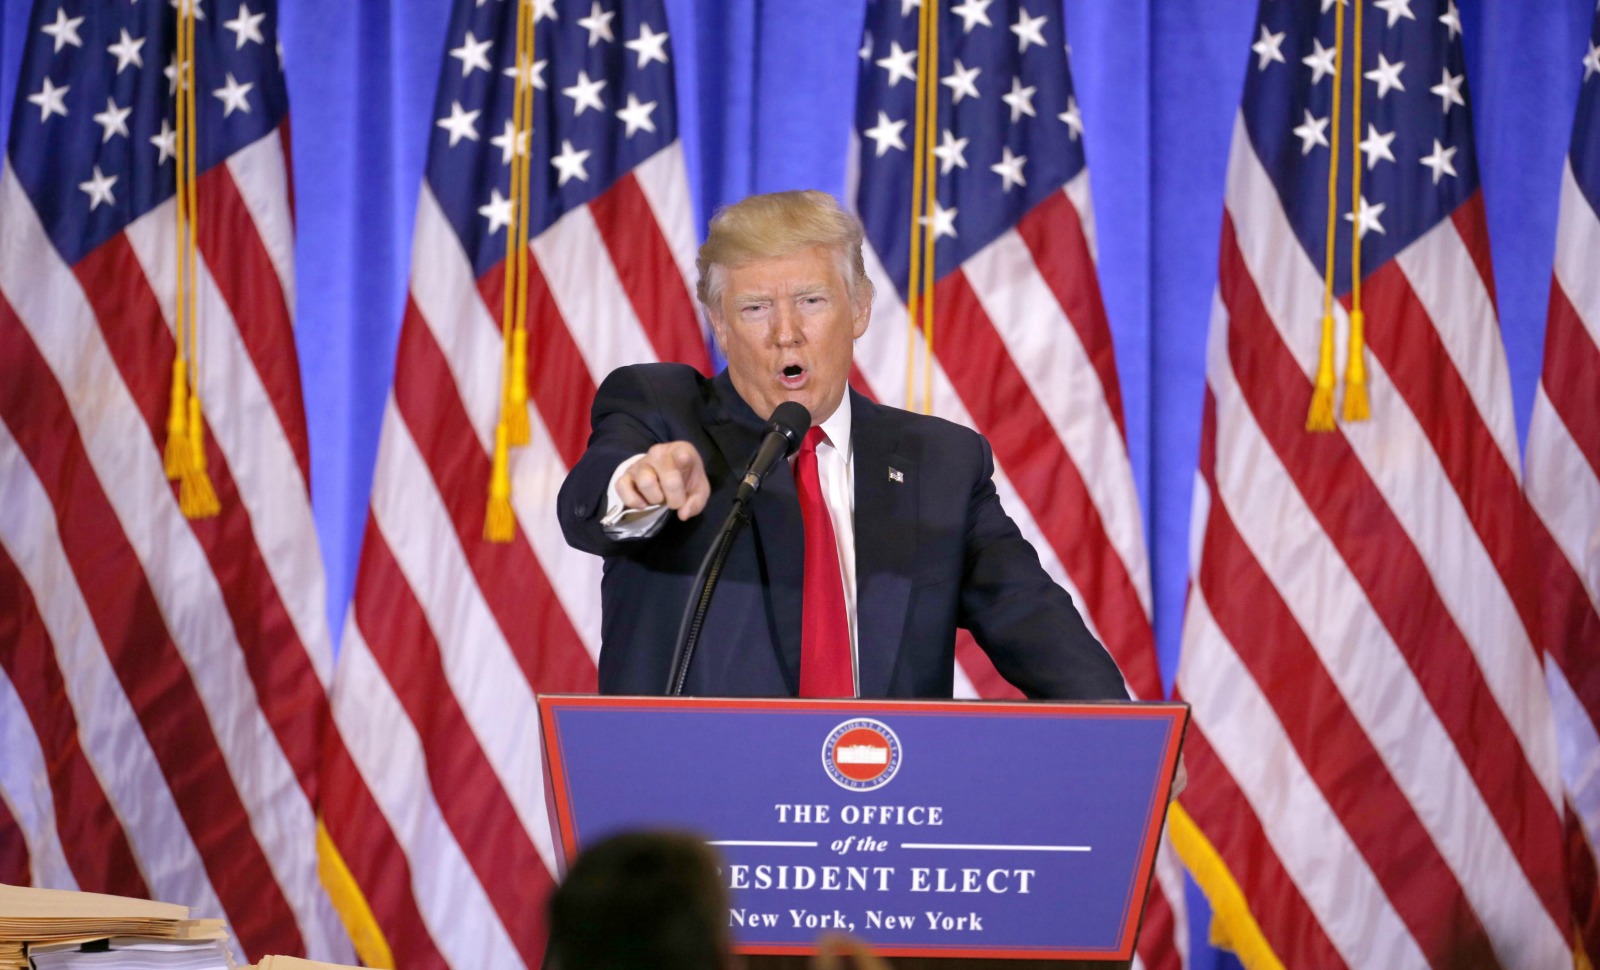 Le président élu Donald Trump invective un journaliste lors d'une conférence de presse à New-York, janvier 2017. SIPA. 00788209_000005